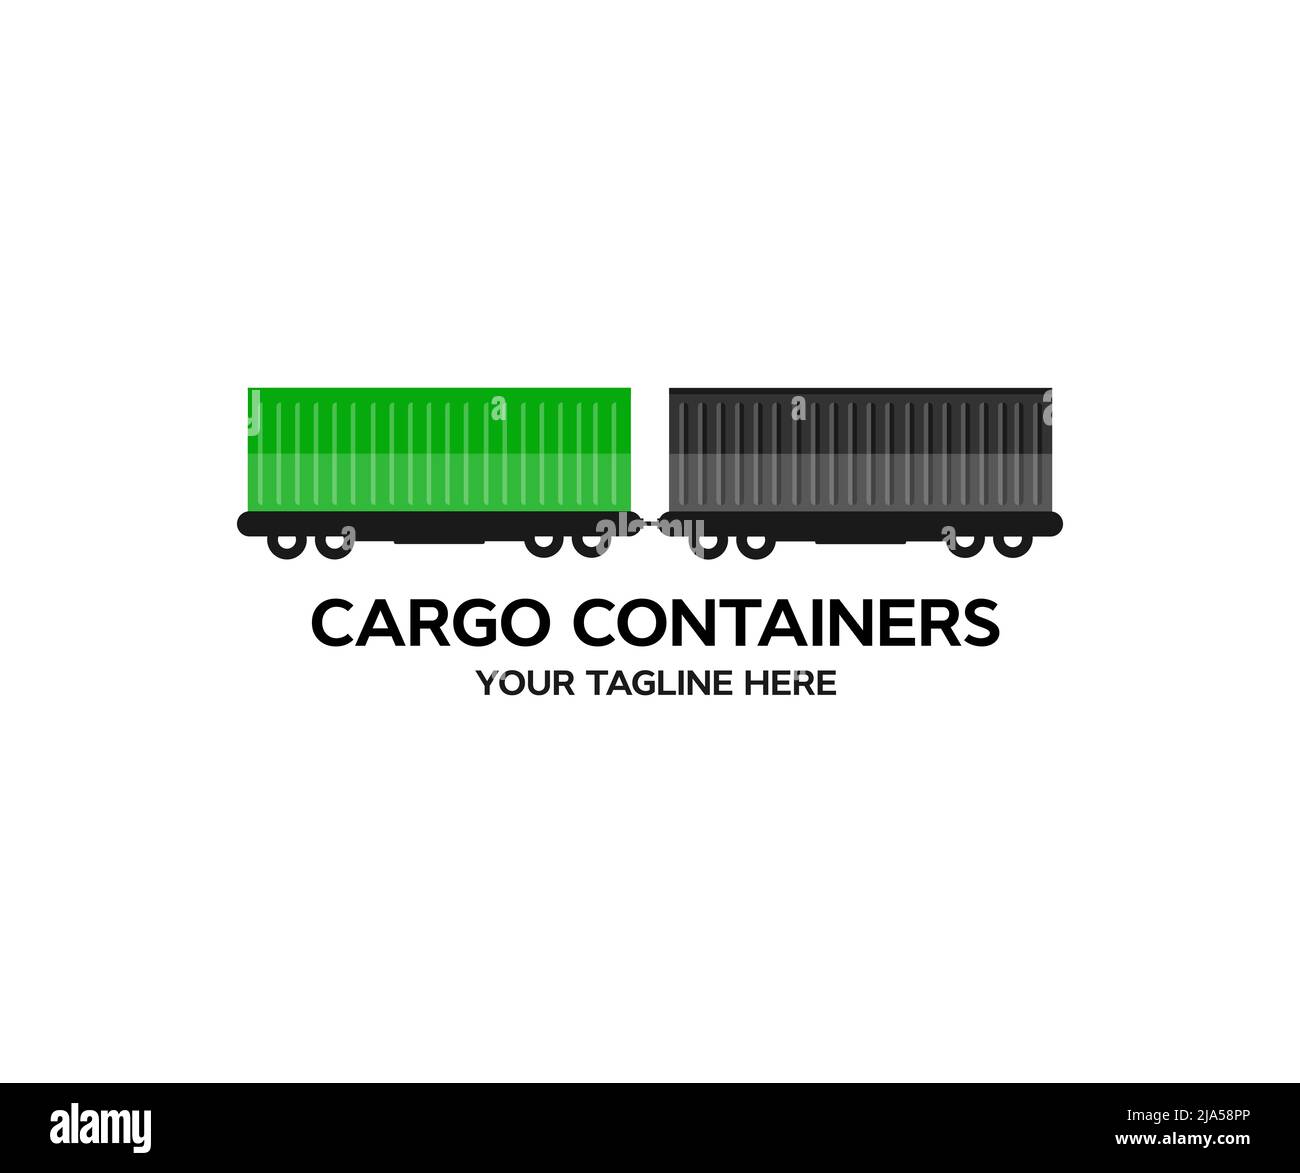 Container Railway Express. Treno merci con container merci ferrovia, trasporto stazione distribuzione logistica merci è trasporto industriale. Illustrazione Vettoriale